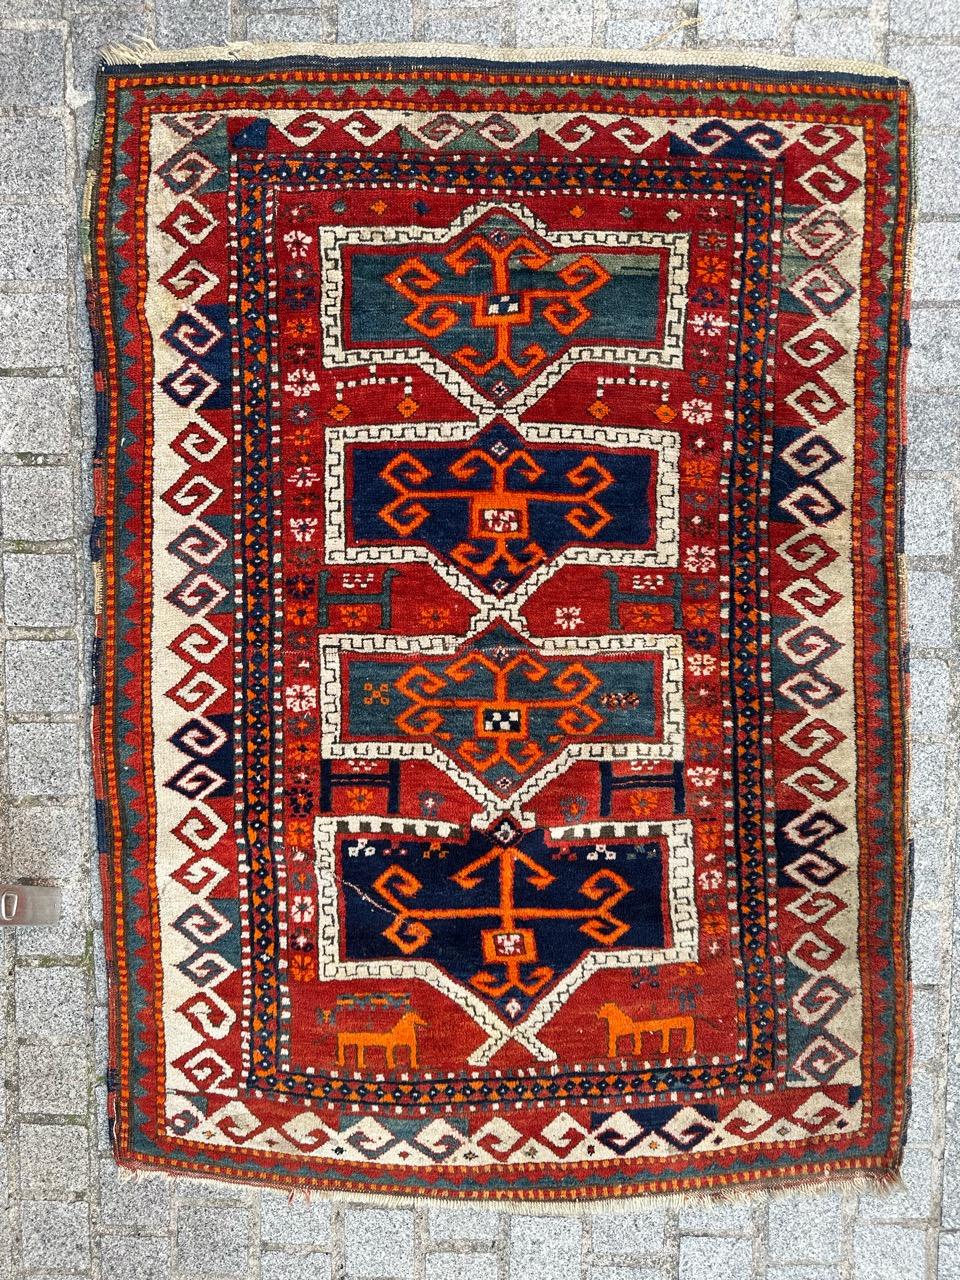 Authentique tapis caucasien Kazak du début du 20e siècle, entièrement noué à la main avec du velours de laine sur une base de laine. 
Entrez dans un monde d'histoire vibrante avec notre exquis tapis Kazak du début du 20e siècle. Plongez dans les